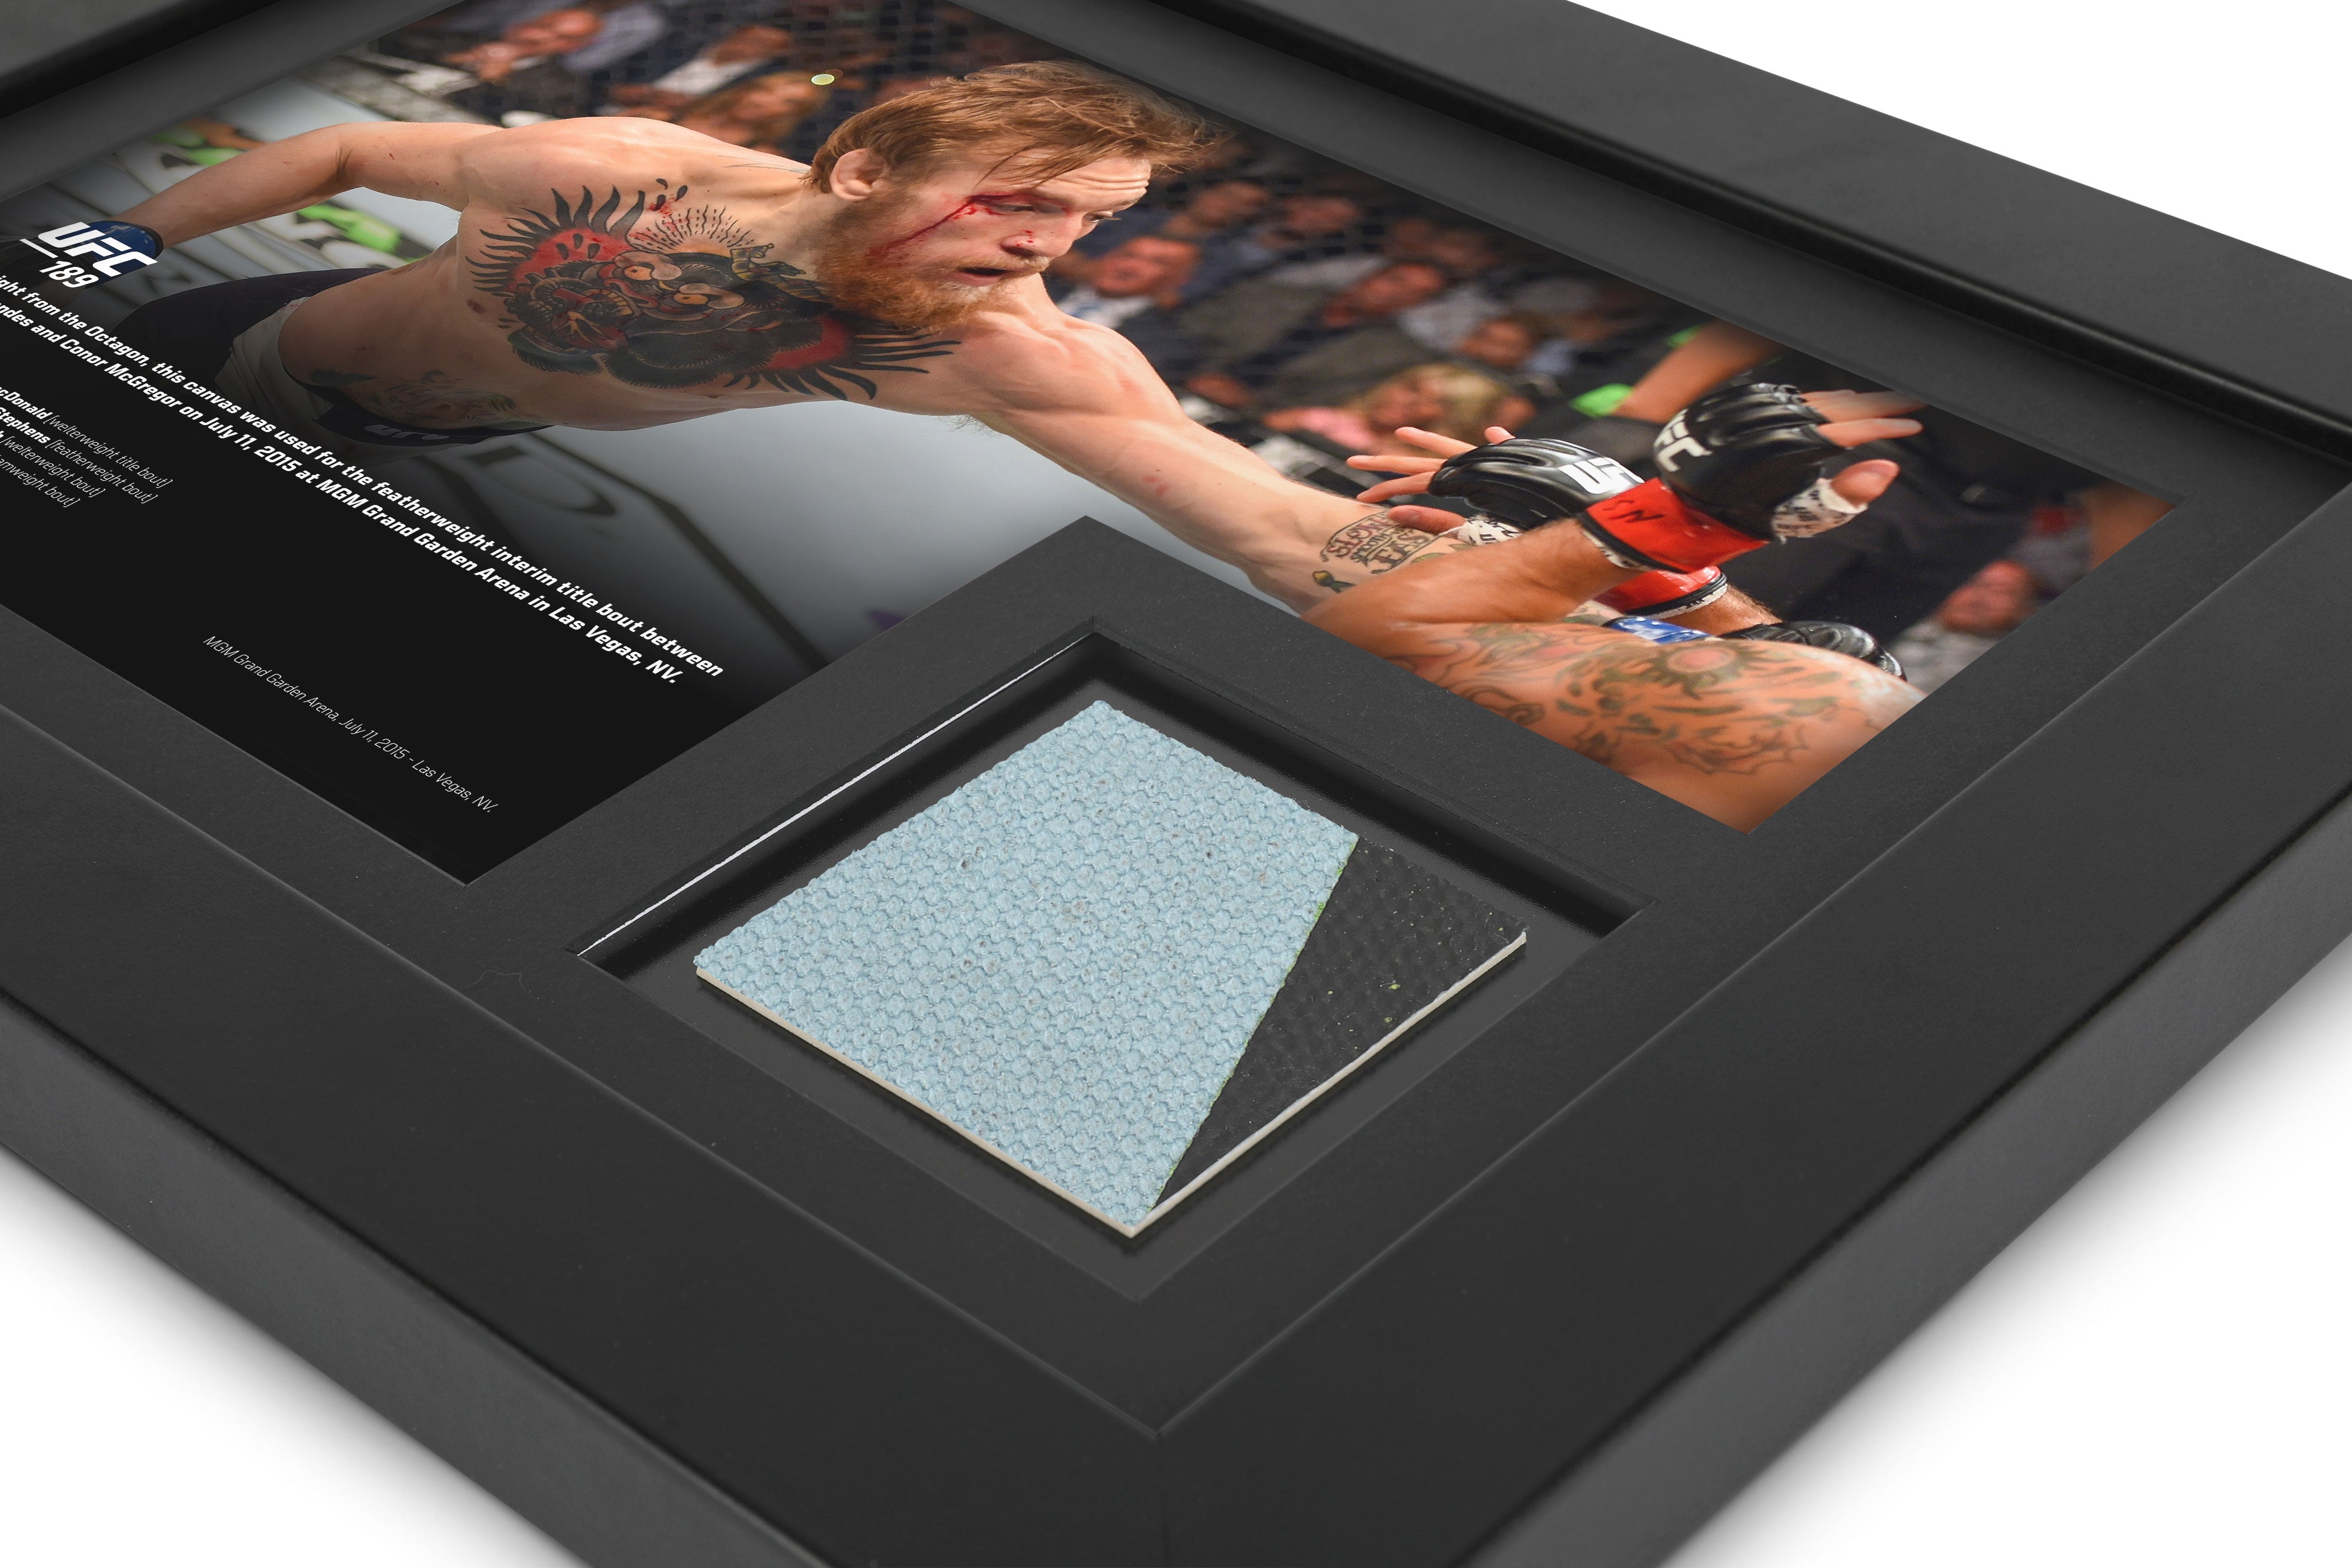 Conor McGregor UFC 189 Canvas & Photo